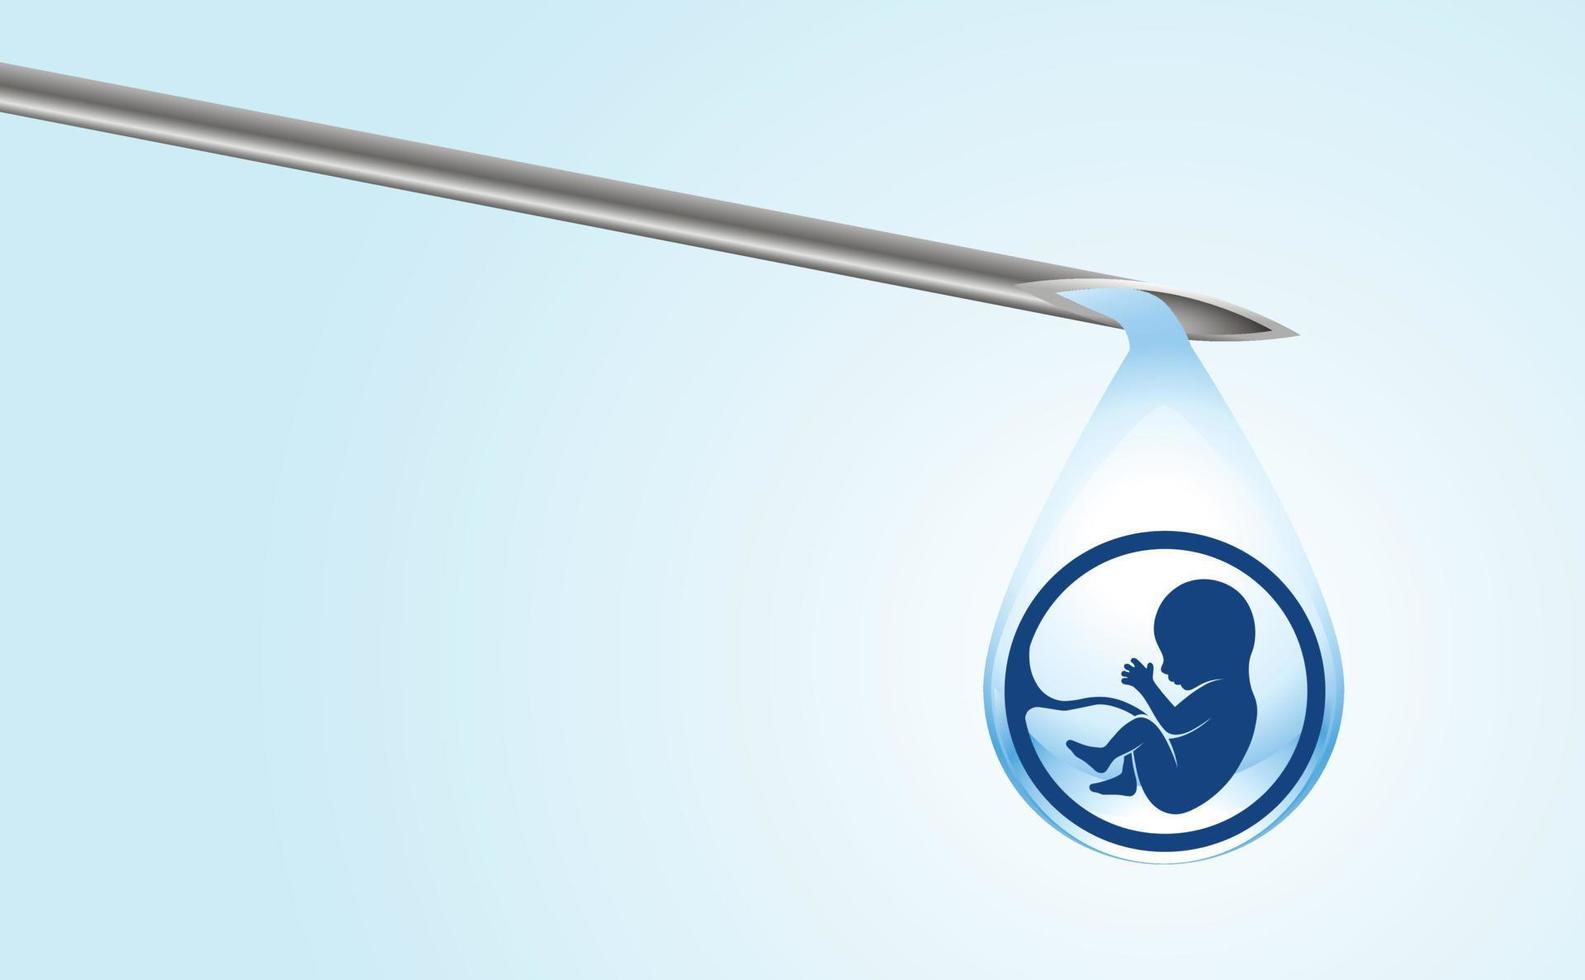 inseminazione artificiale. provetta per bambini, ivf. sulla punta della pipetta c'è una goccia con la sagoma di un embrione che gocciola in una provetta. copia spazio. illustrazione vettoriale